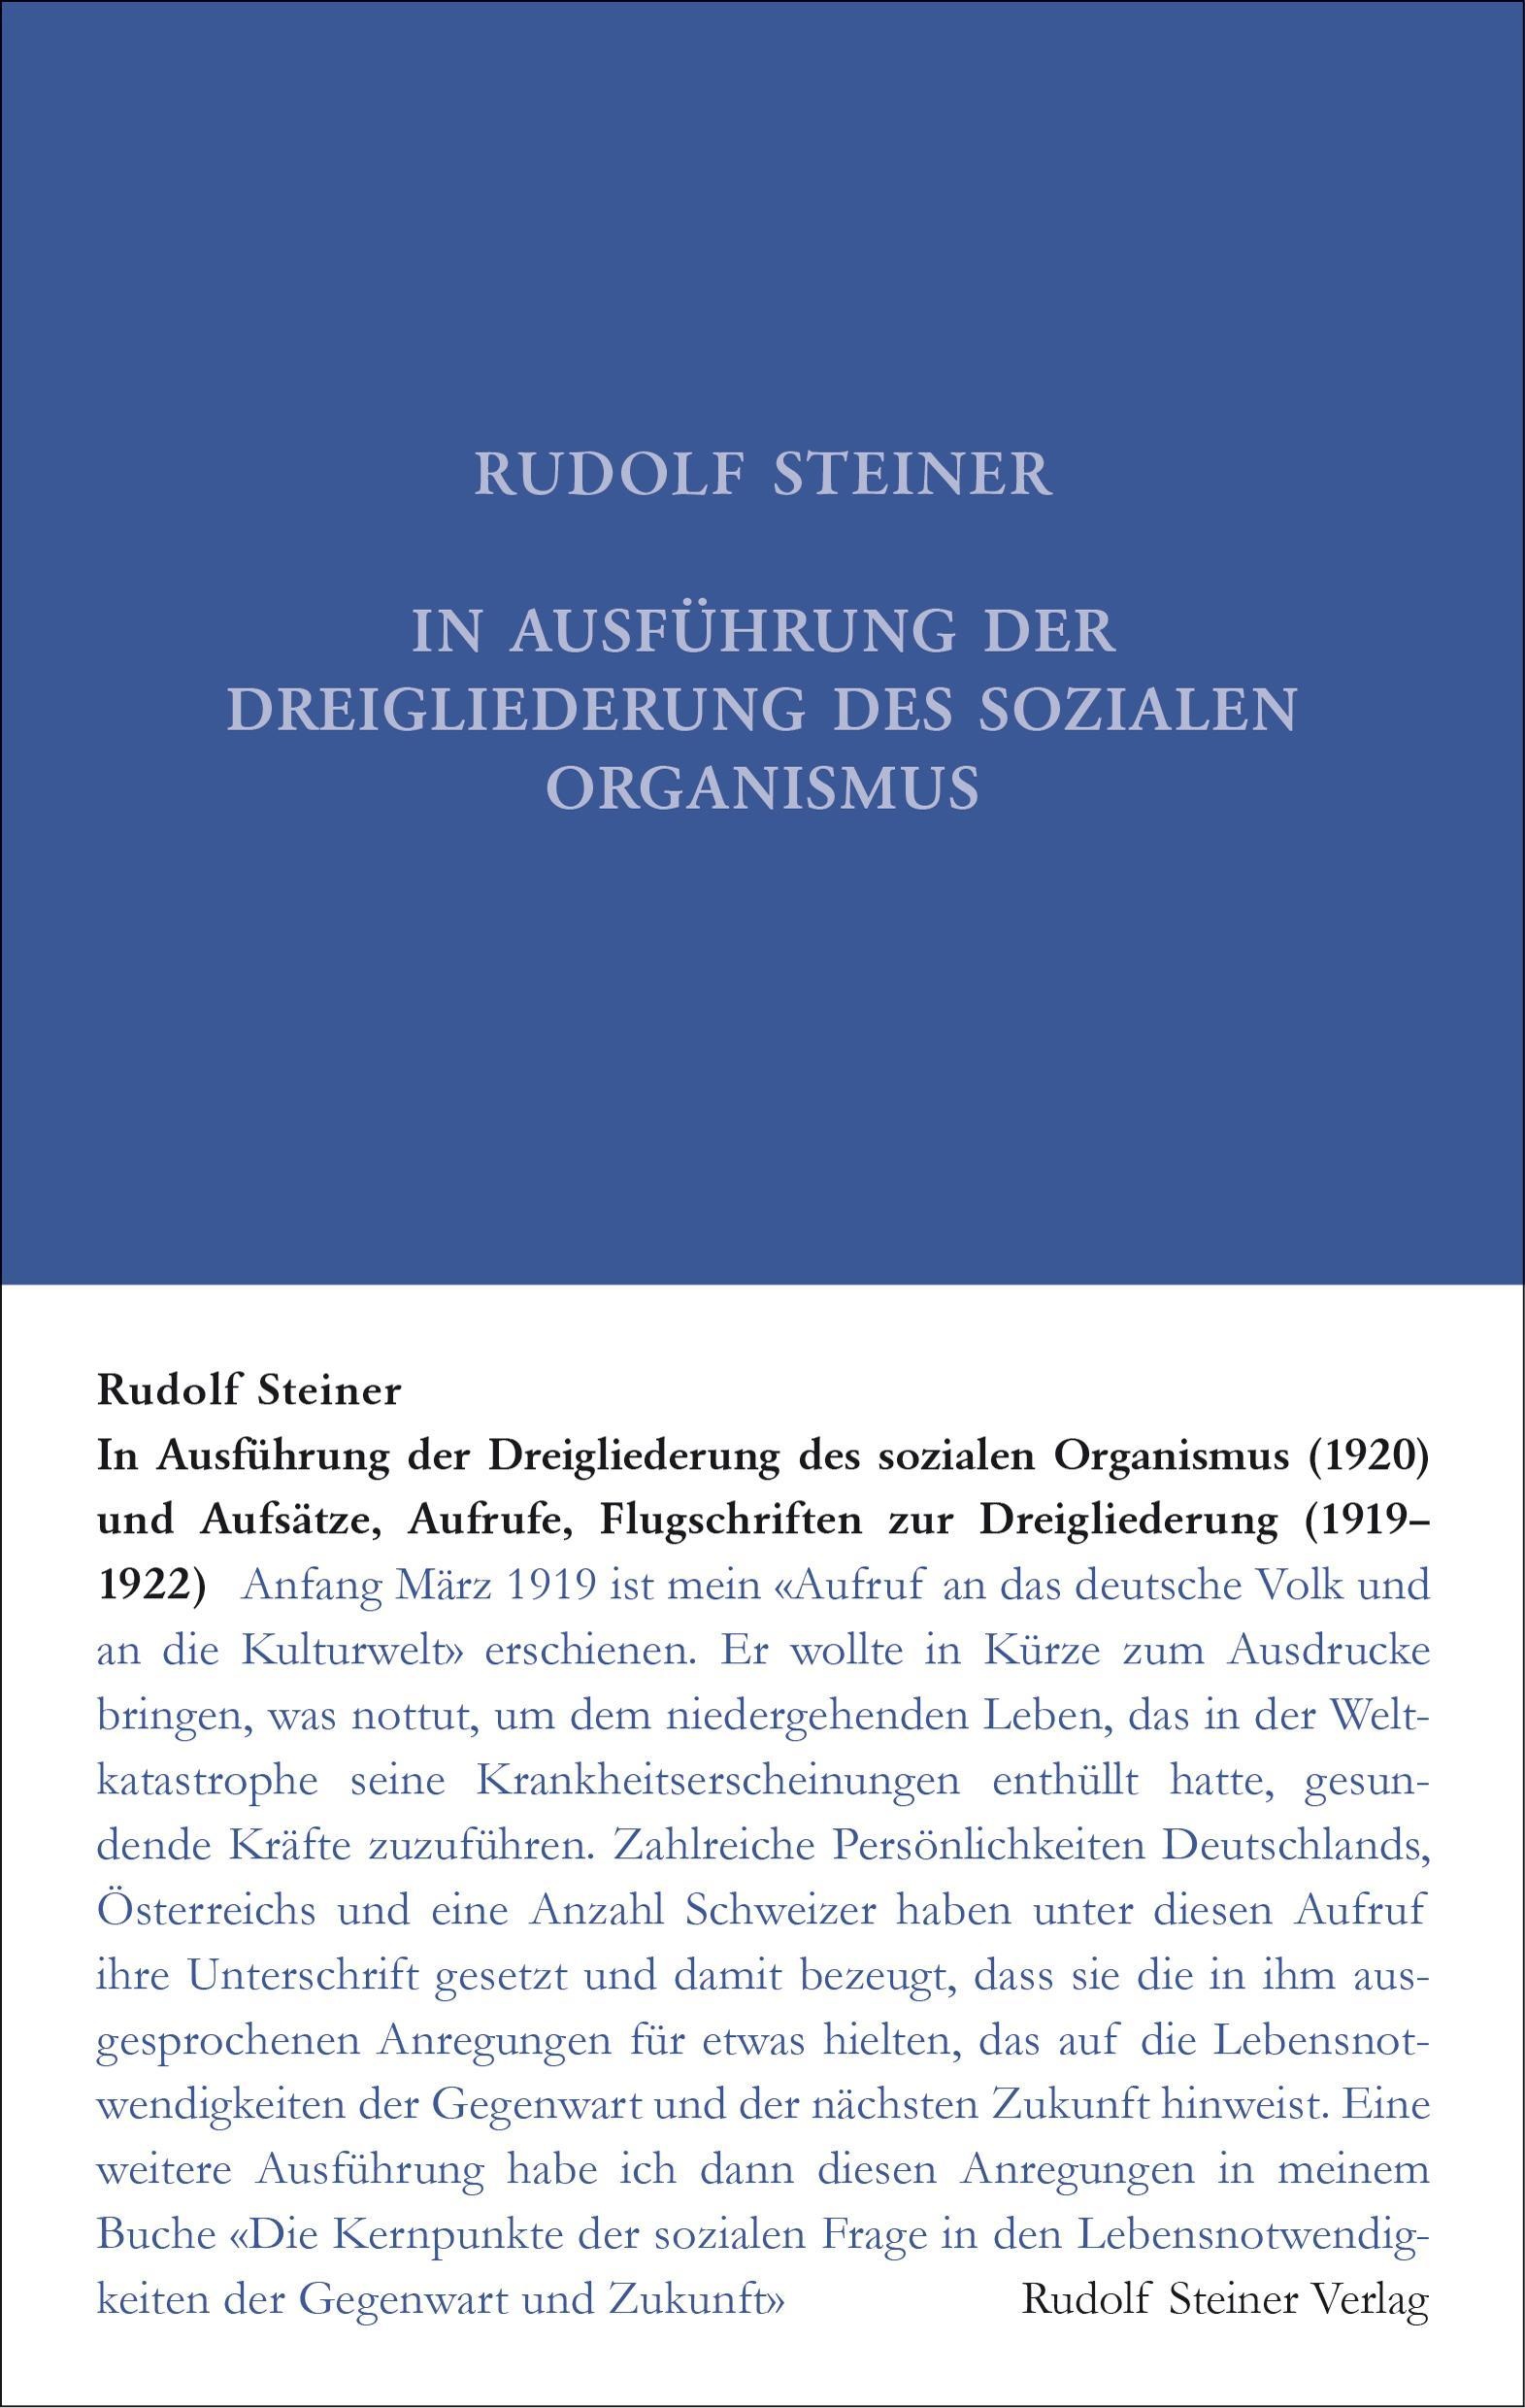 In Ausführung Der Dreigliederung Des Sozialen Organismus (1920) Und Aufsätze  Aufrufe  Flugschriften Zur Dreigliederung (1919-1922 - Rudolf Steiner  G